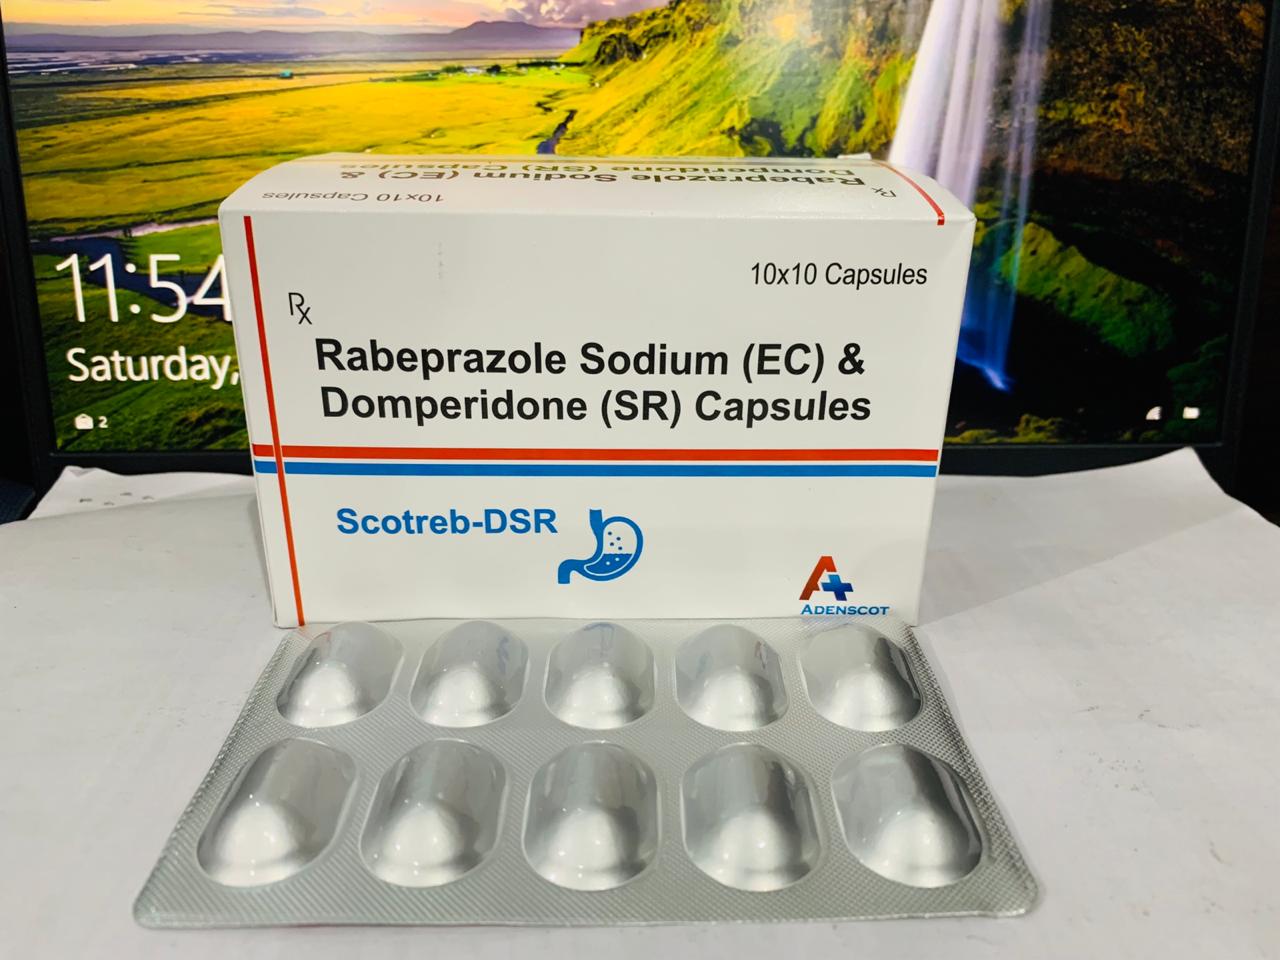 Product Name: Scotreb Dsr, Compositions of Scotreb Dsr are Rabeprazole Sodium (EC) & Domperidone (SR) capsules - Adenscot Healthcare Pvt. Ltd.